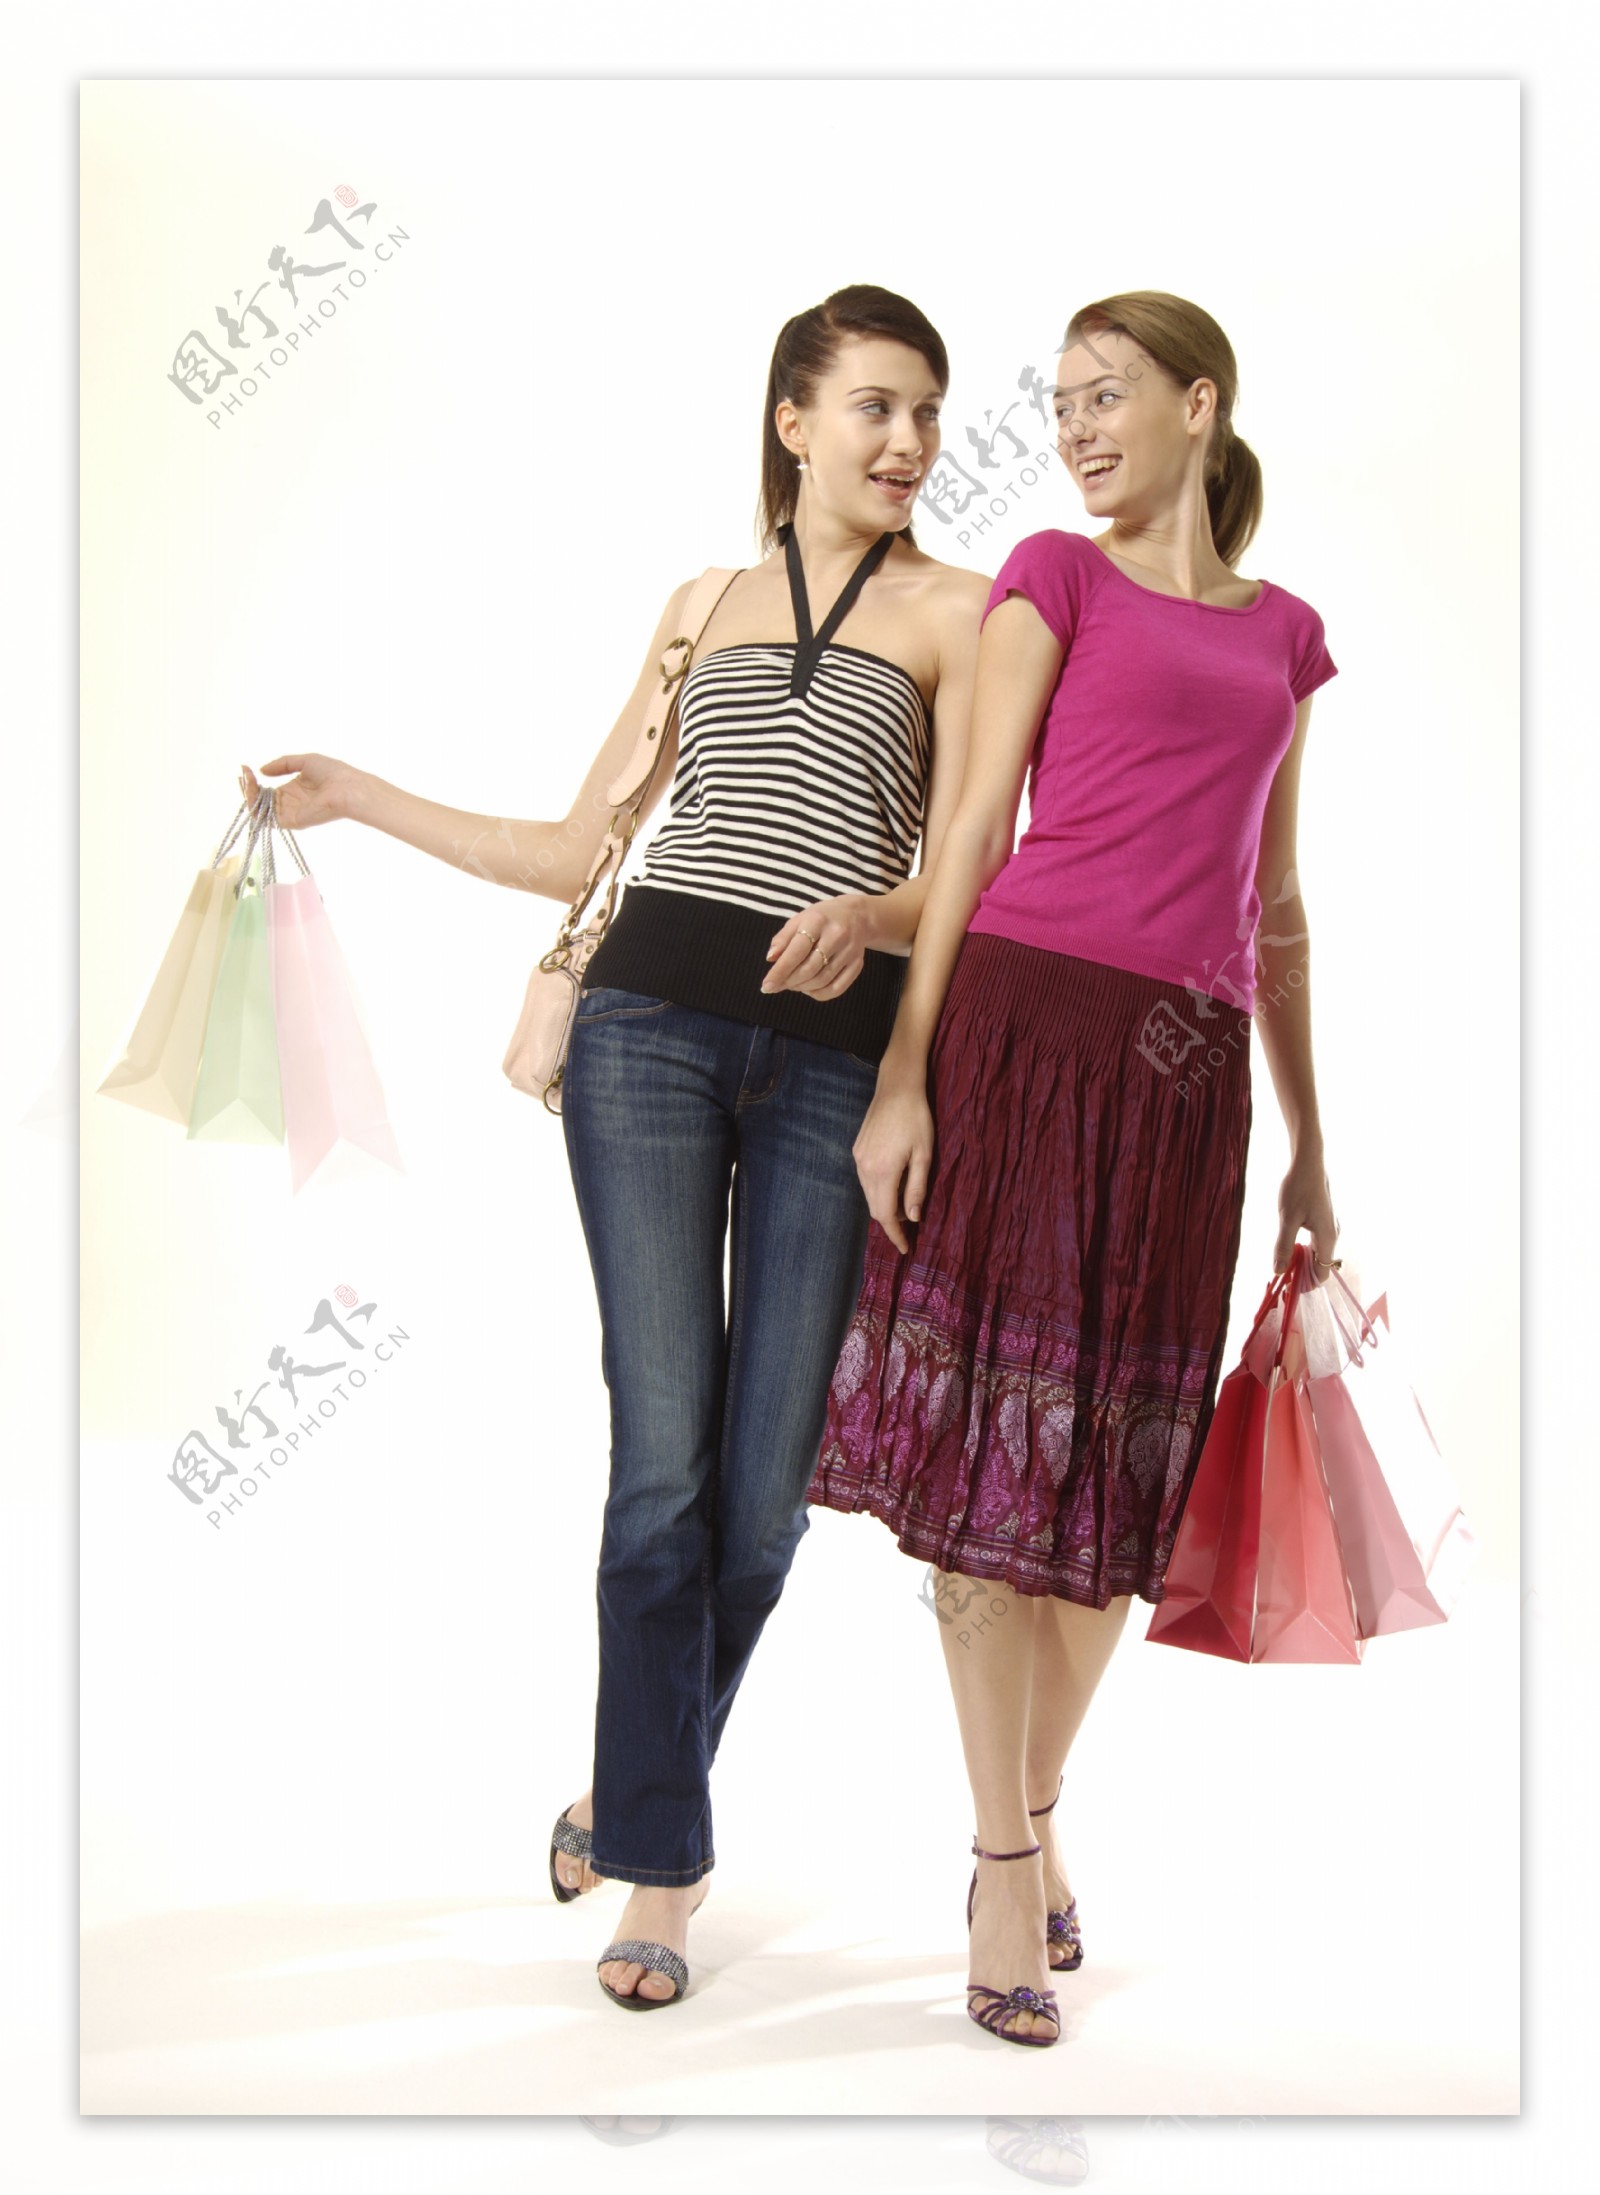 提着购物袋行走的两个美女图片